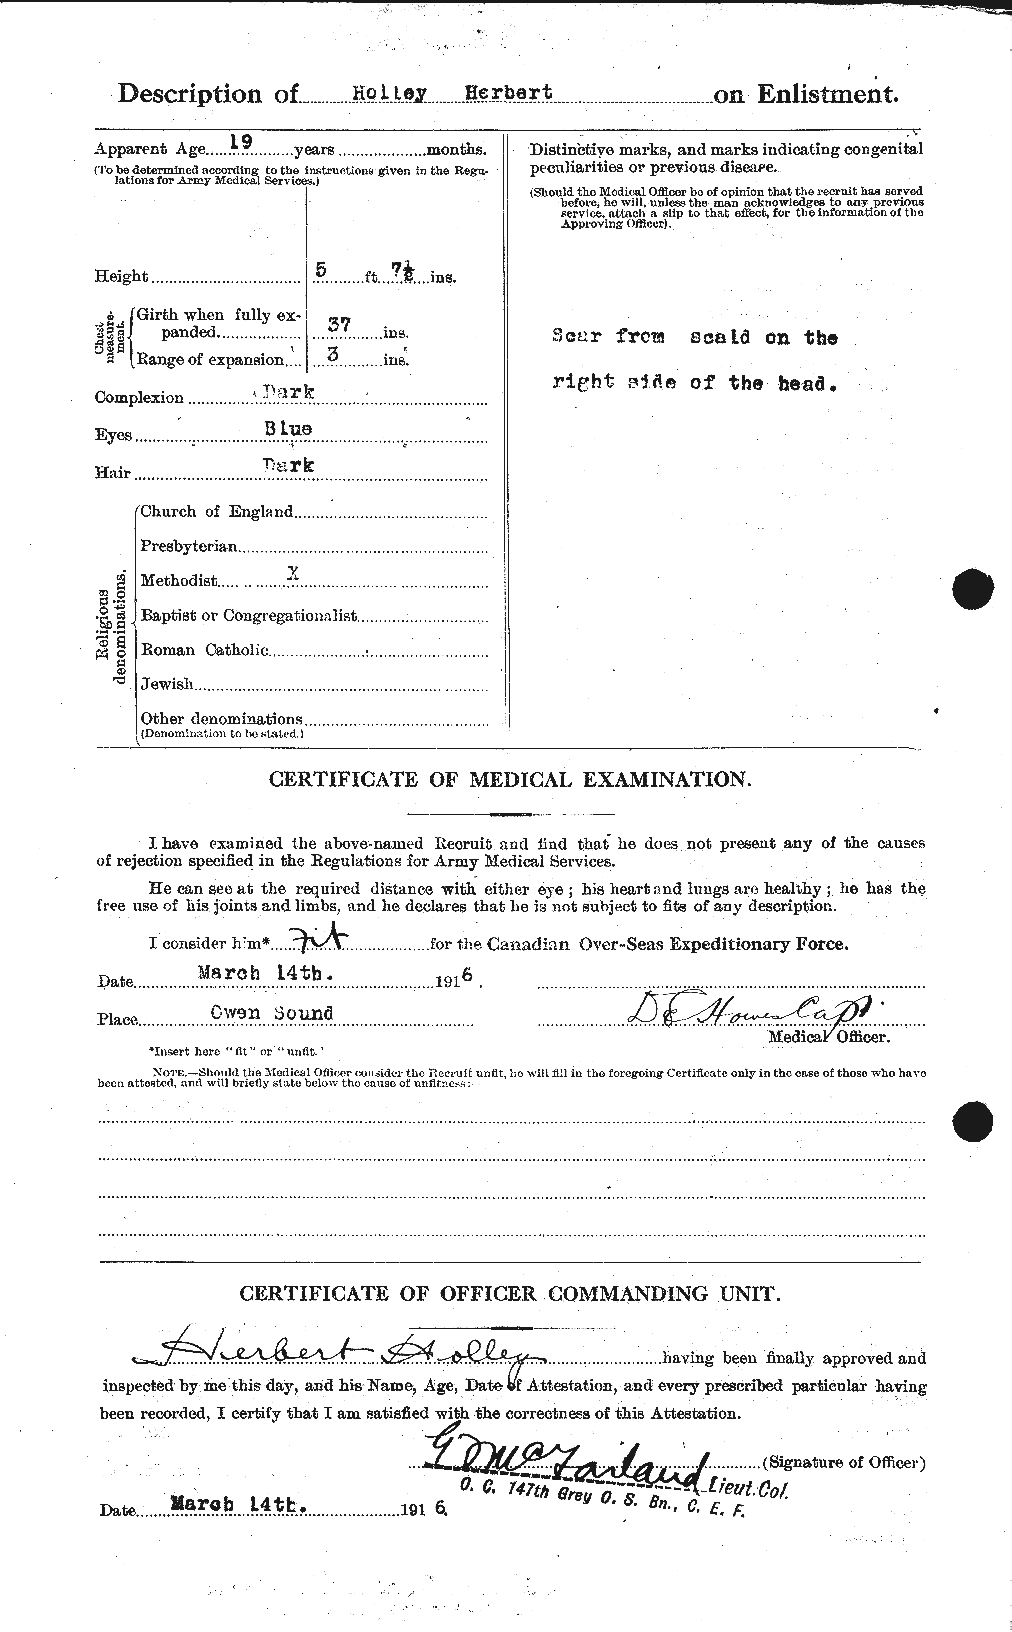 Dossiers du Personnel de la Première Guerre mondiale - CEC 396335b